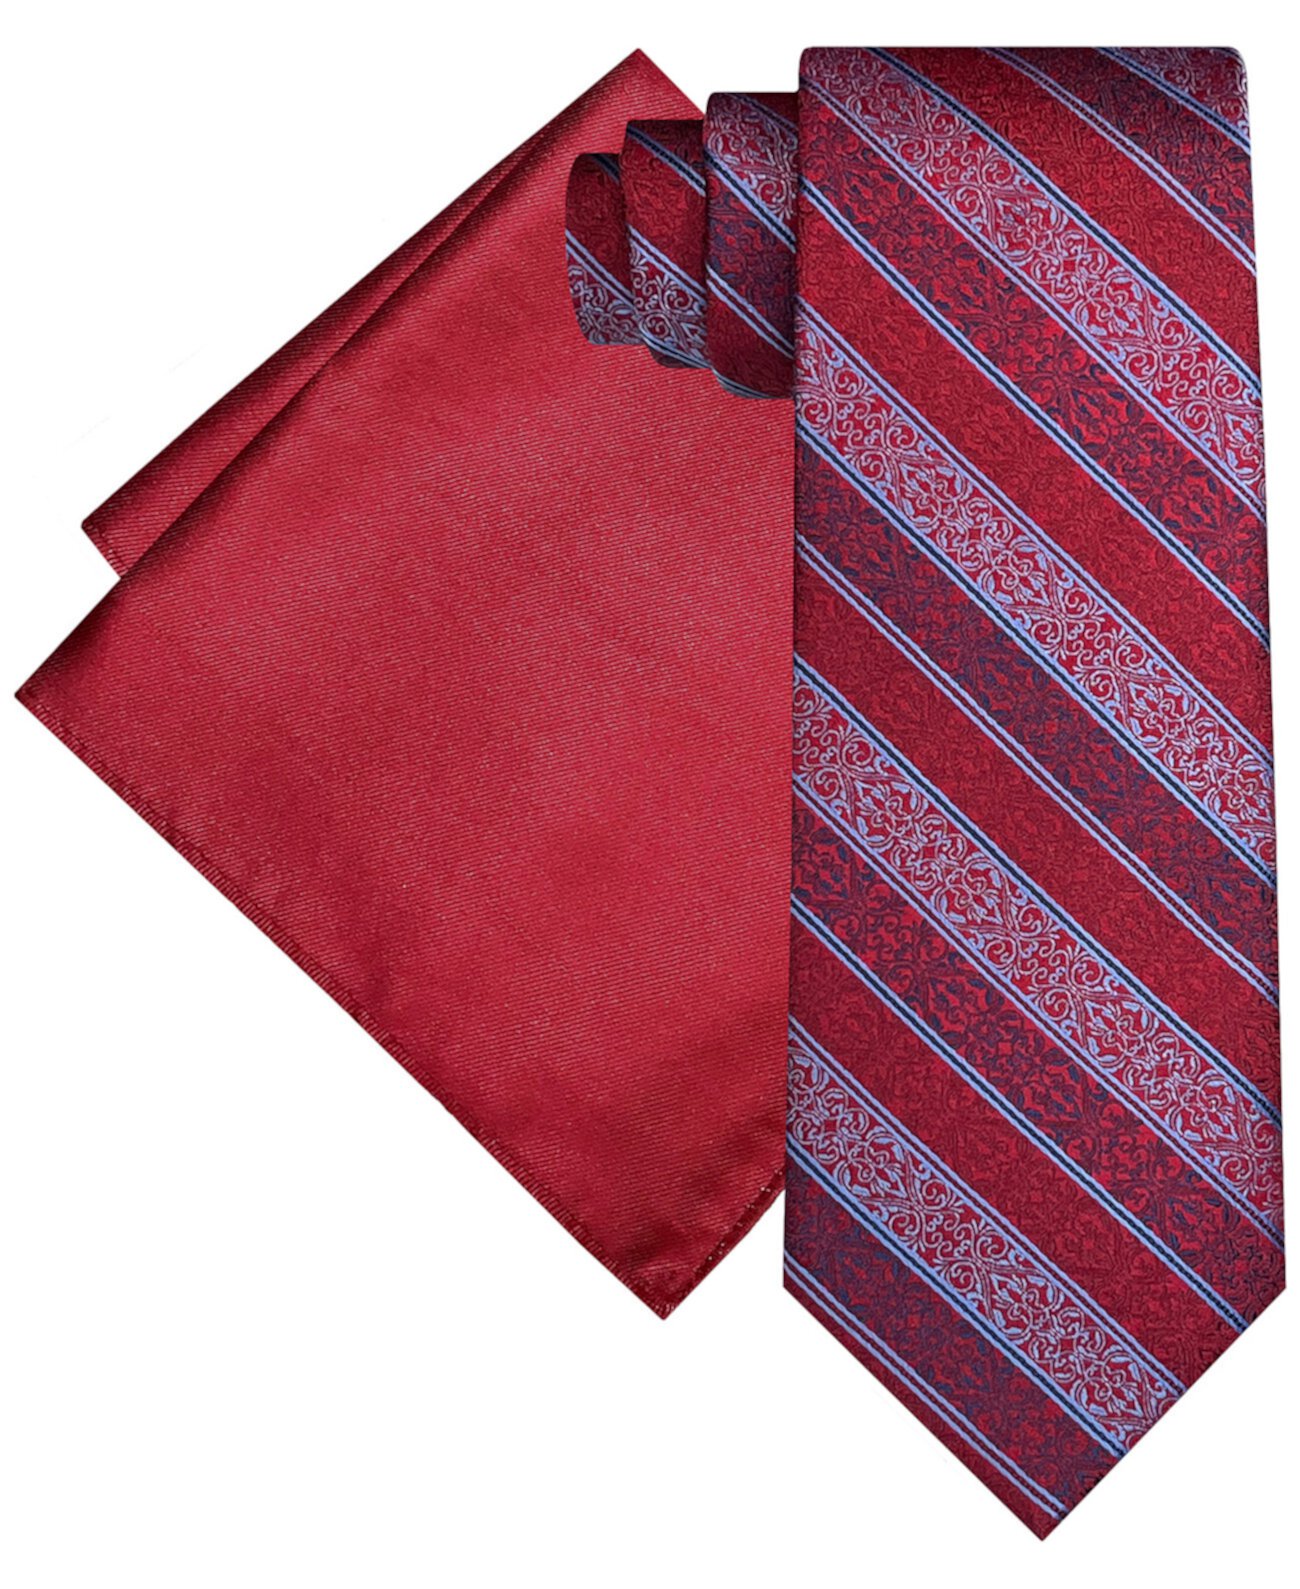 Мужской комплект из галстука и нагрудного платка в текстурированную полоску Steve Harvey